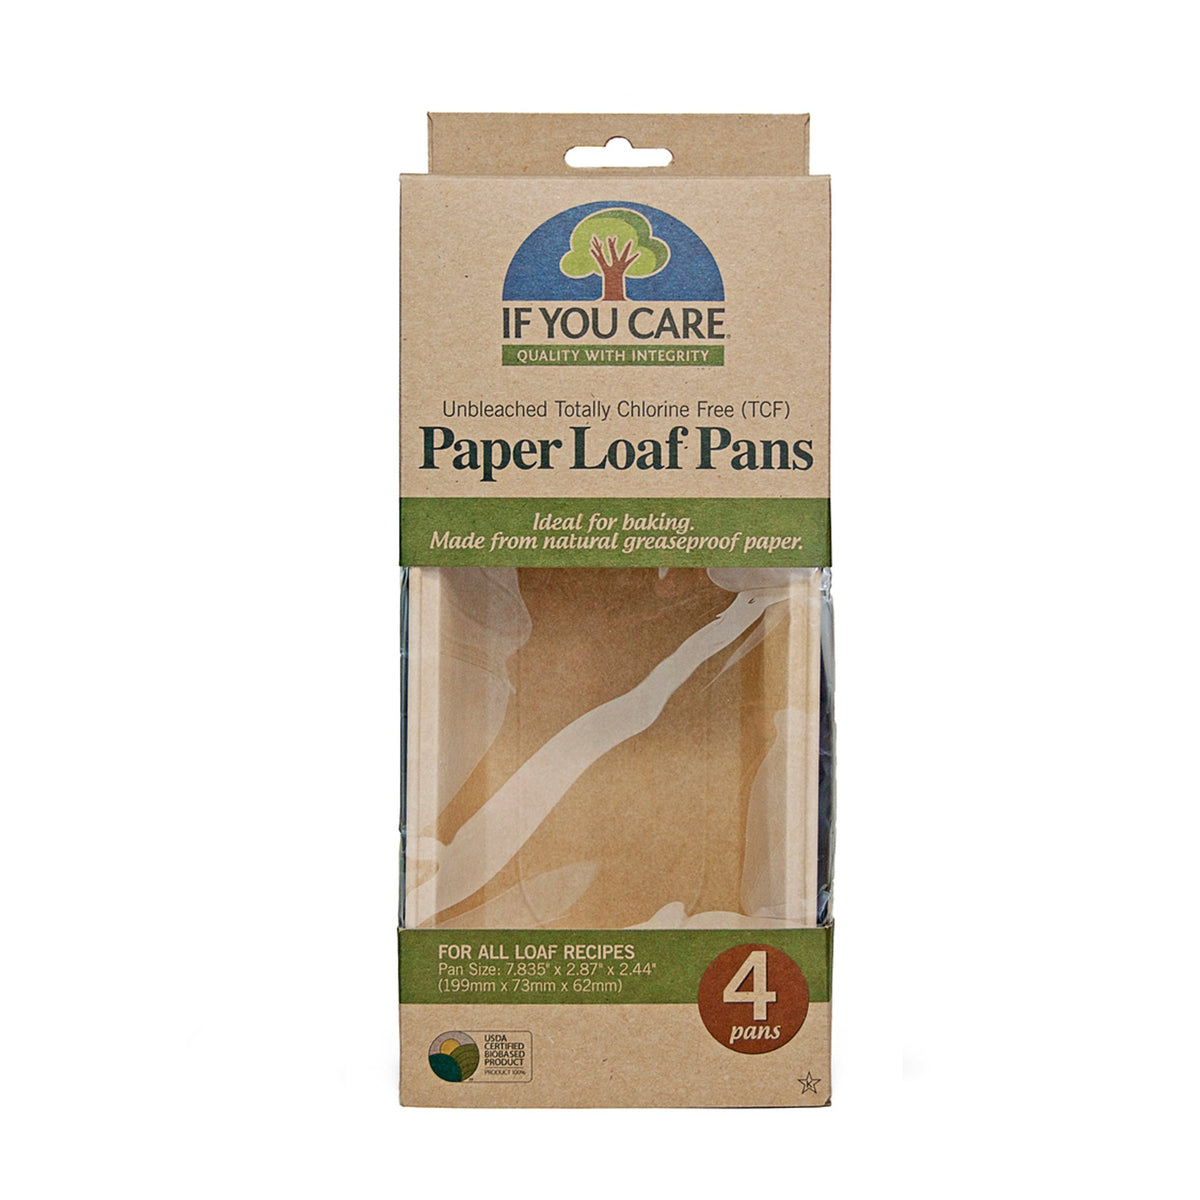 paper loaf pans in package, 4 pans per, pan size 7.835&quot; x 2.87&quot; x 2.44&quot;